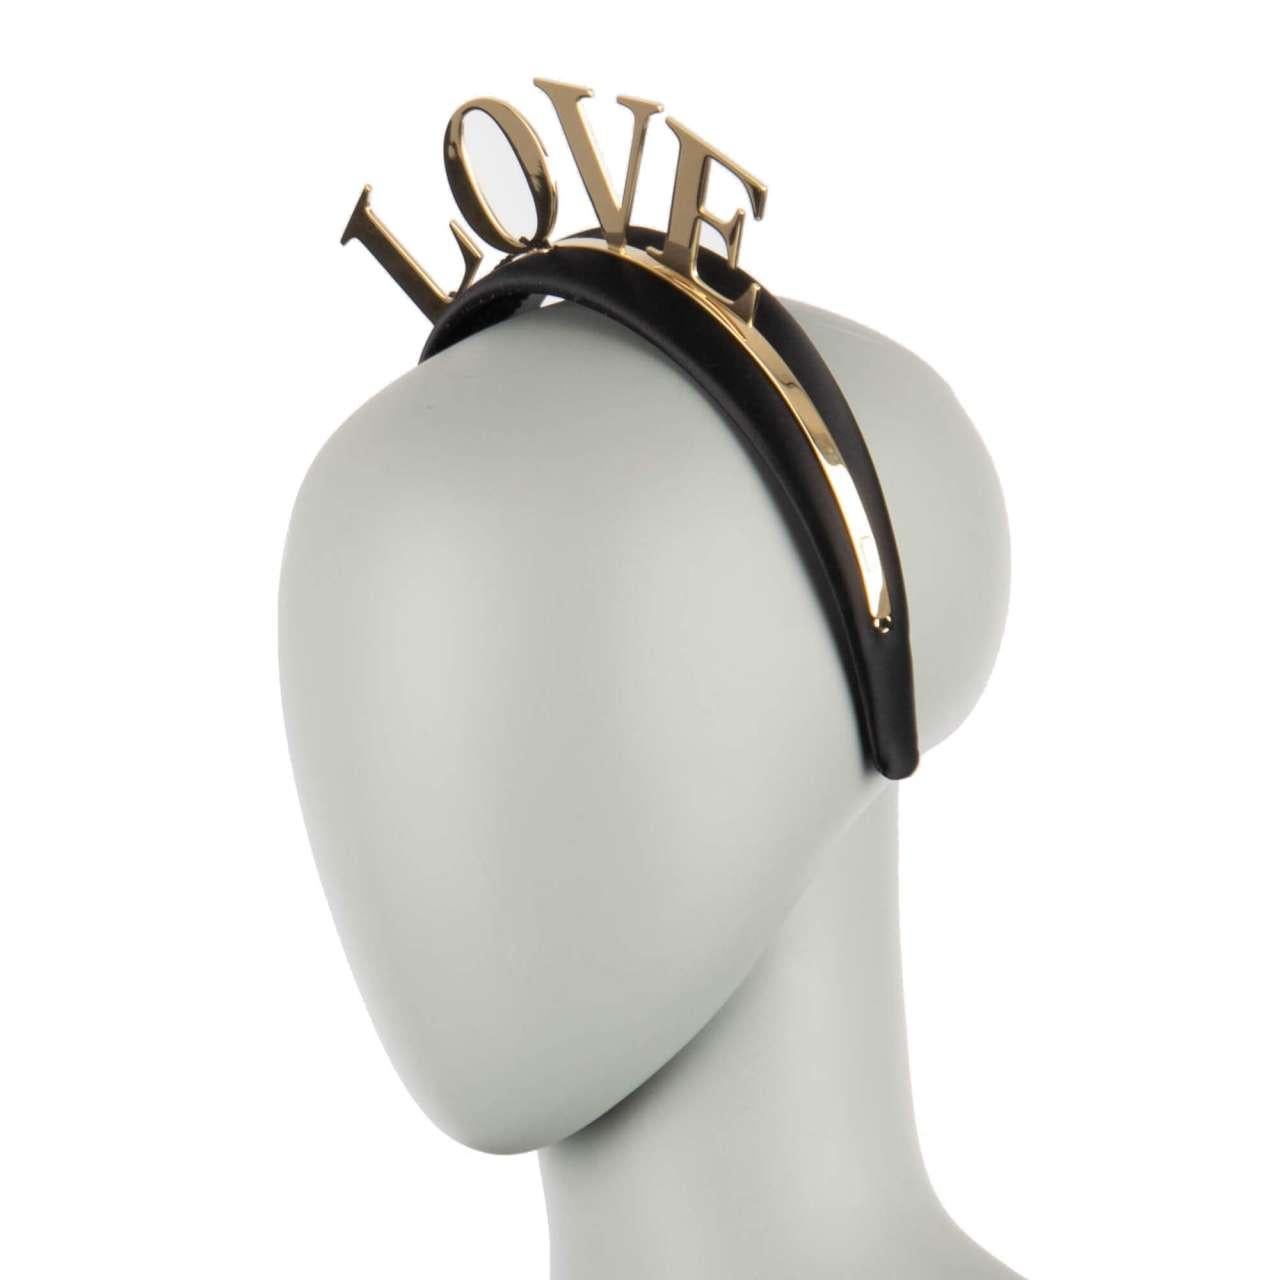 Dolce & Gabbana - Love Crown Headband Black Gold For Sale 2